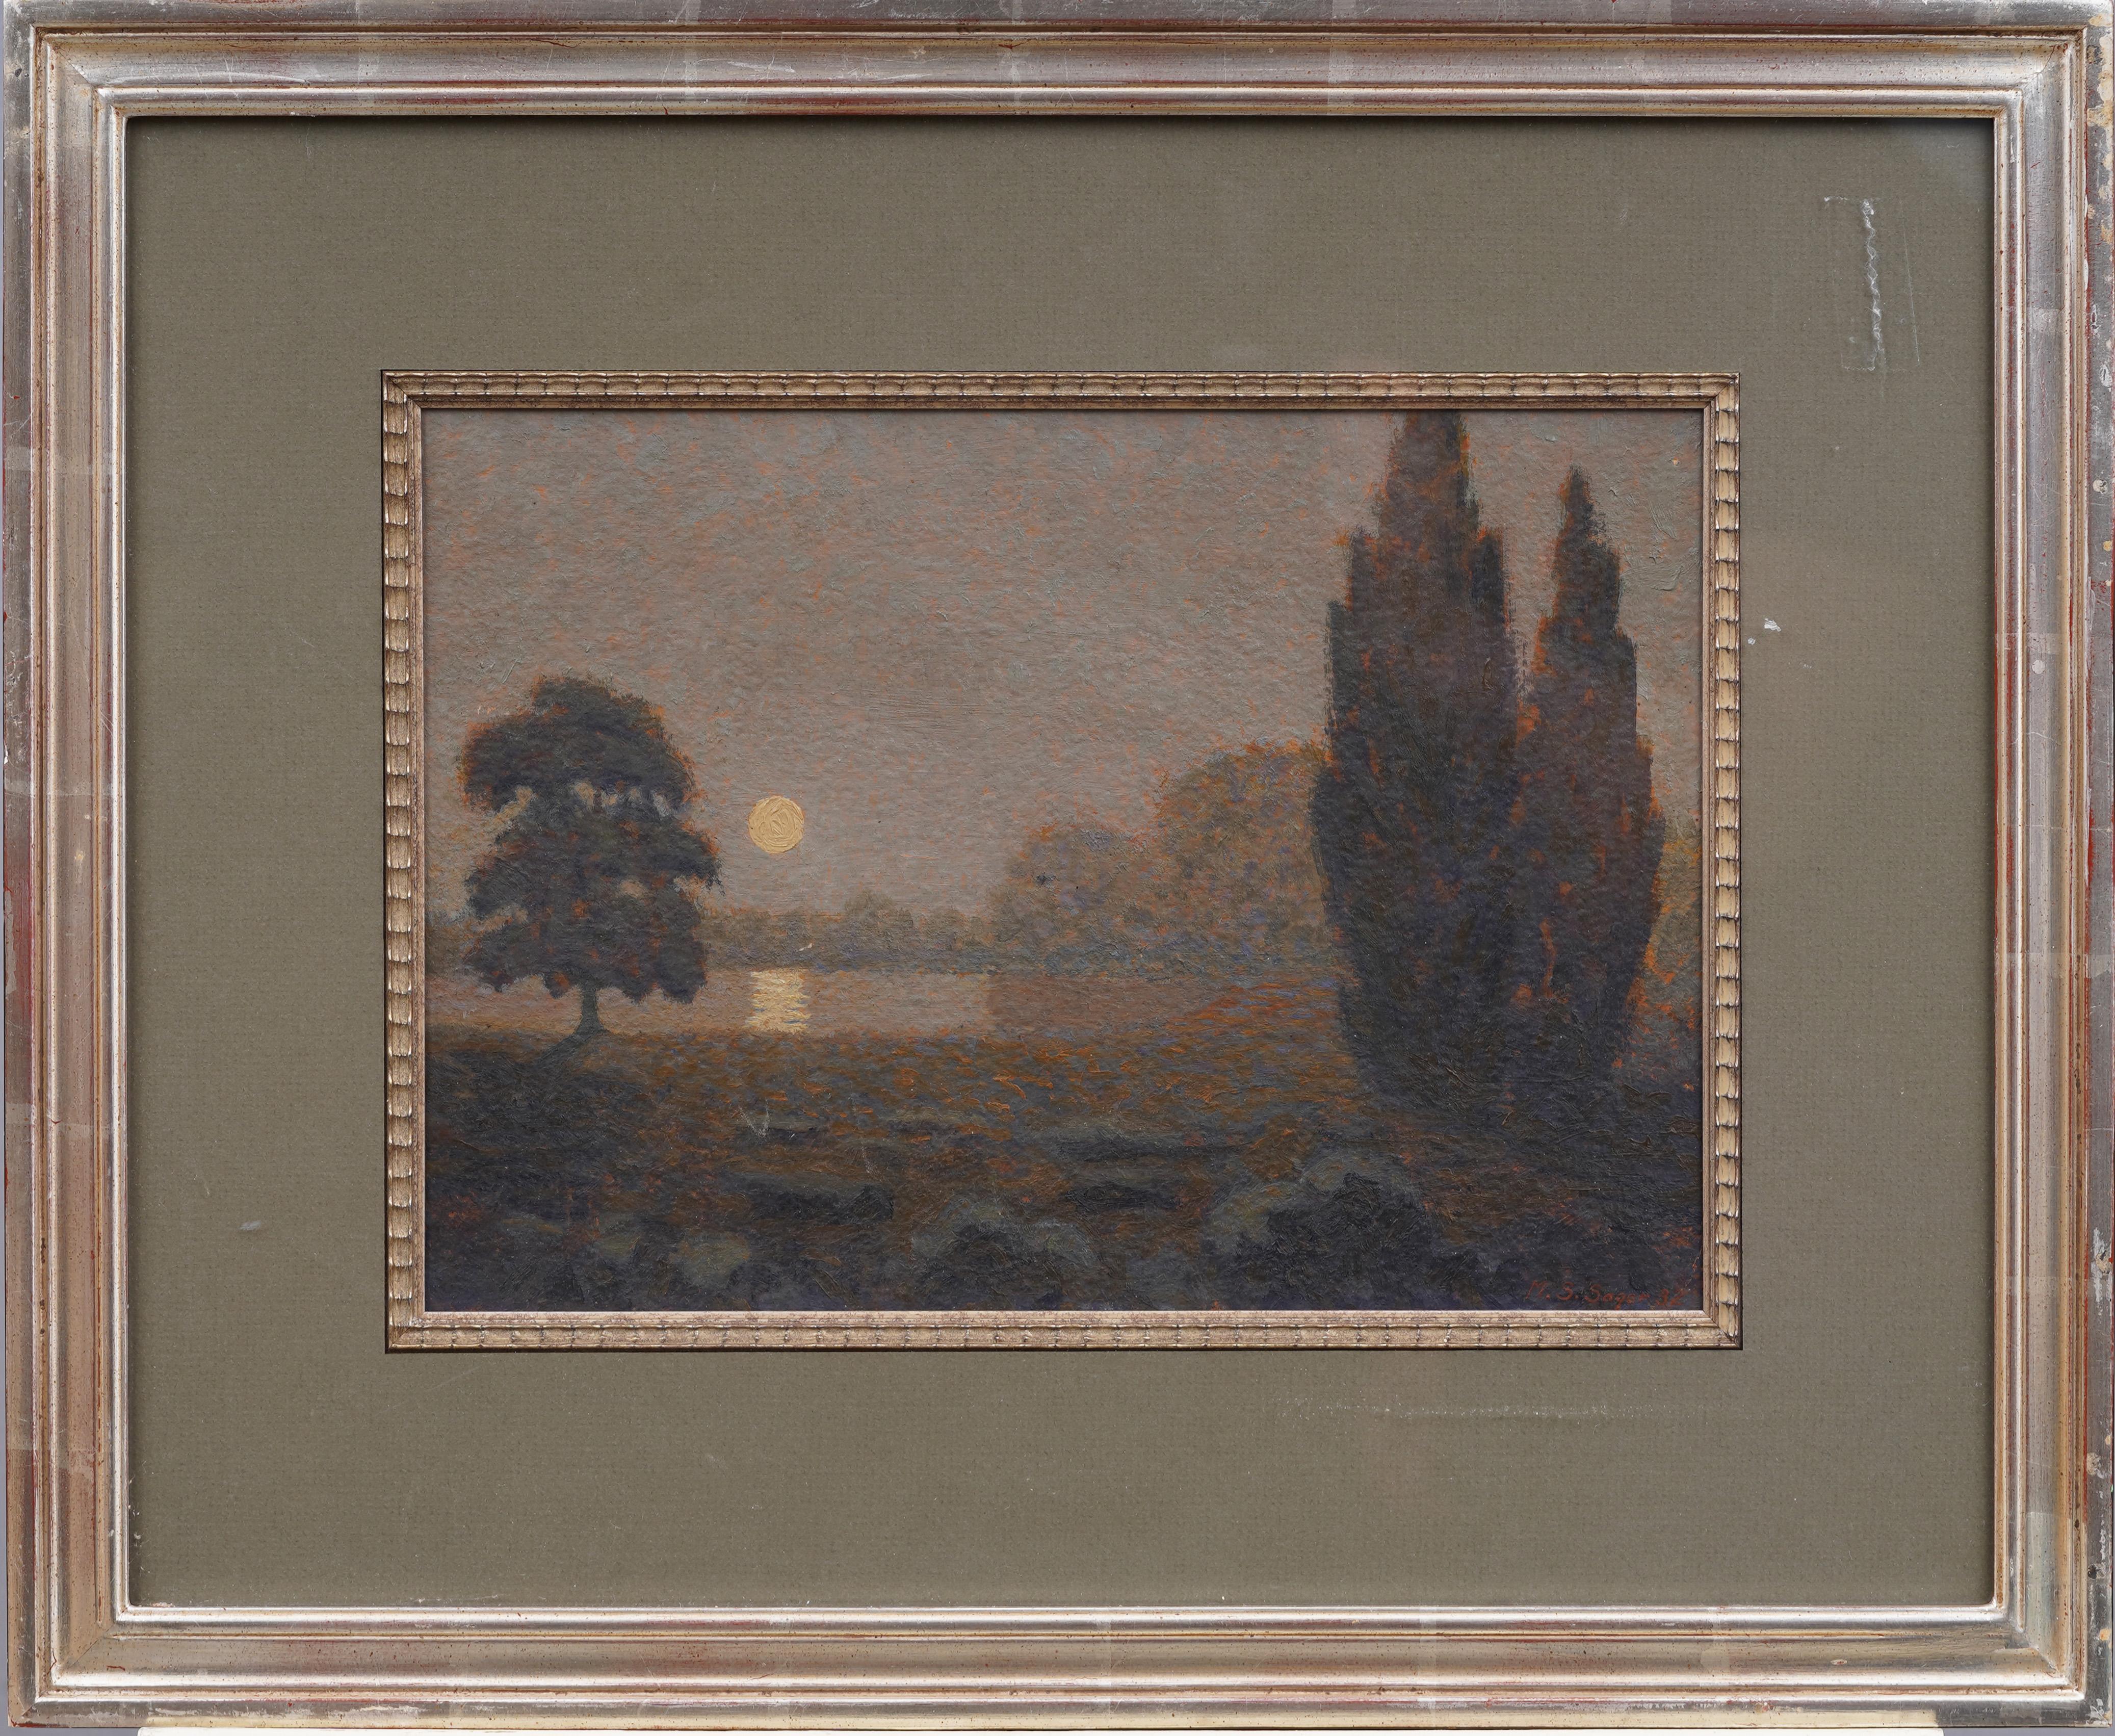 Incredible 1932 American modernist landscape moonlit painting.  Oil on board.  Framed.  Signed.  